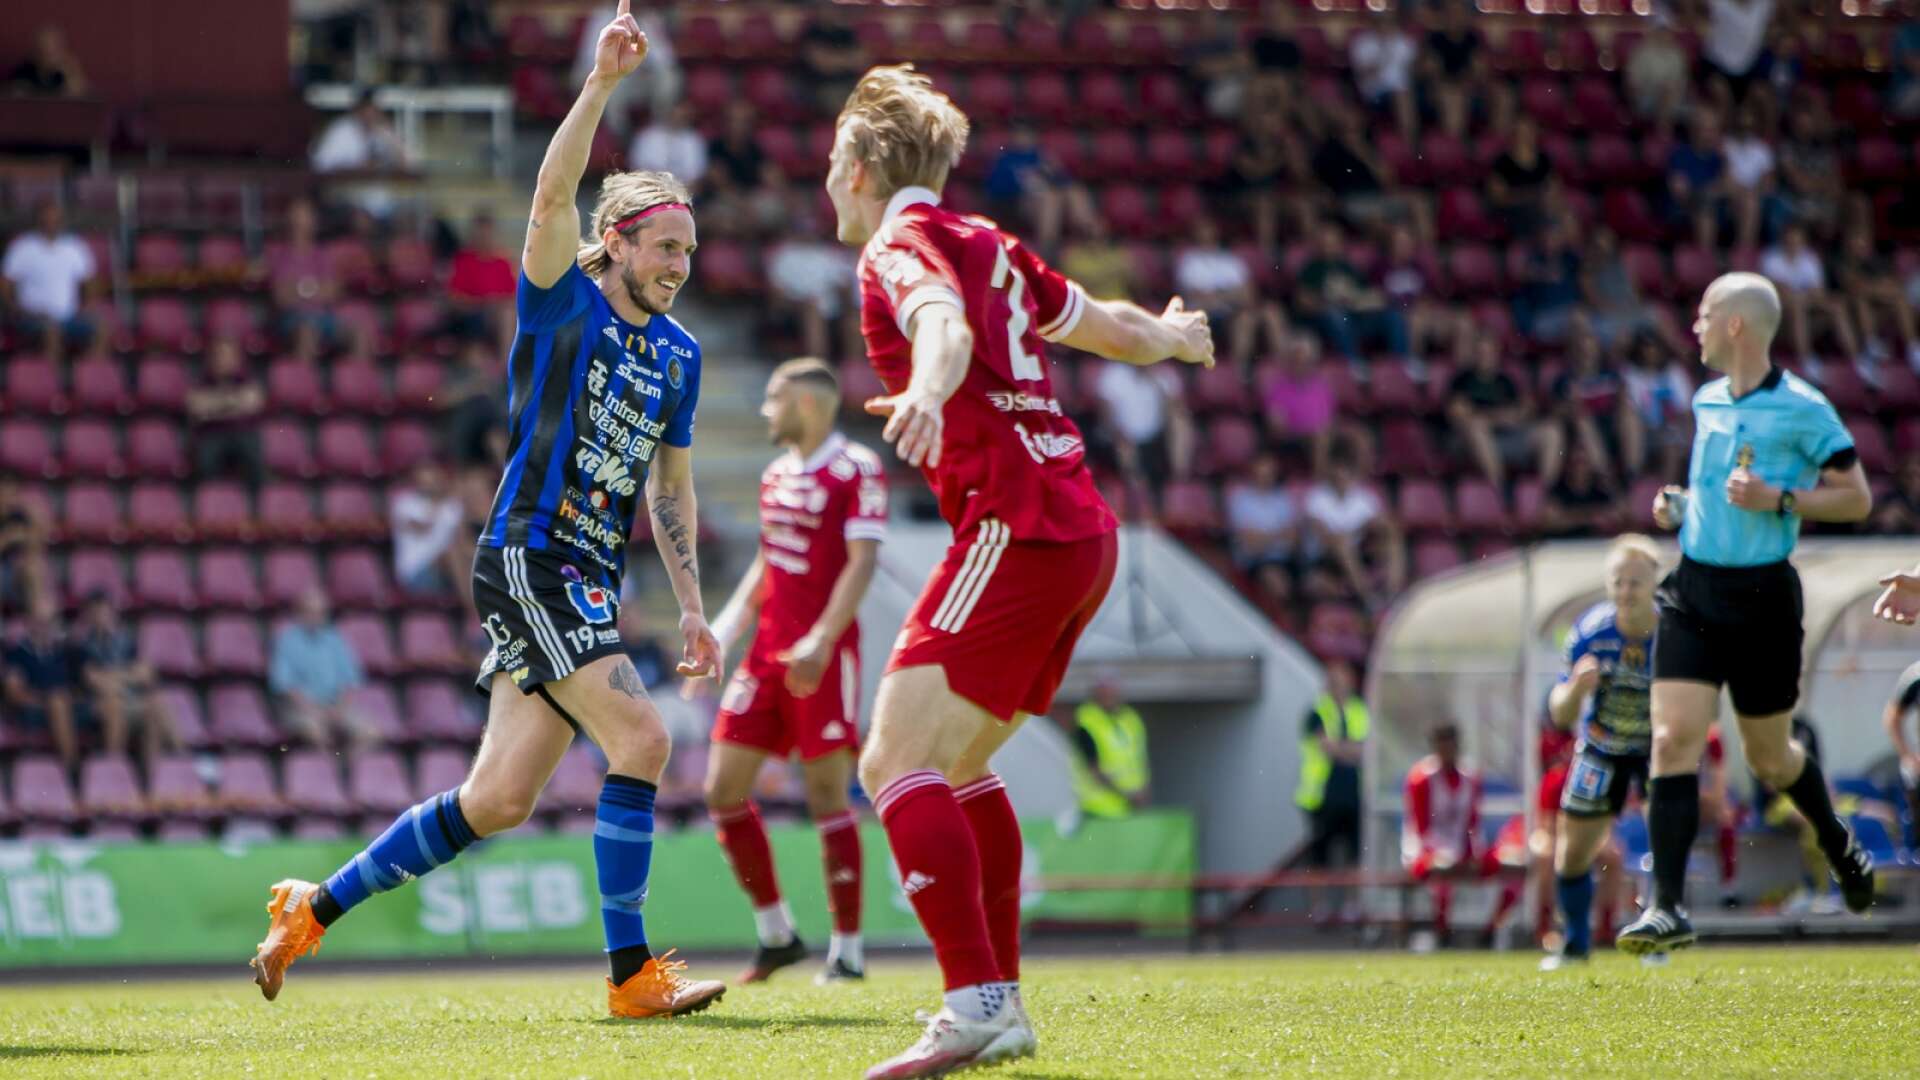 David Johannesson spelade återigen från start och gjorde två mål i segern hemma mot Piteå där Karlstad äntligen fick lira inför publik på Tingvalla IP.